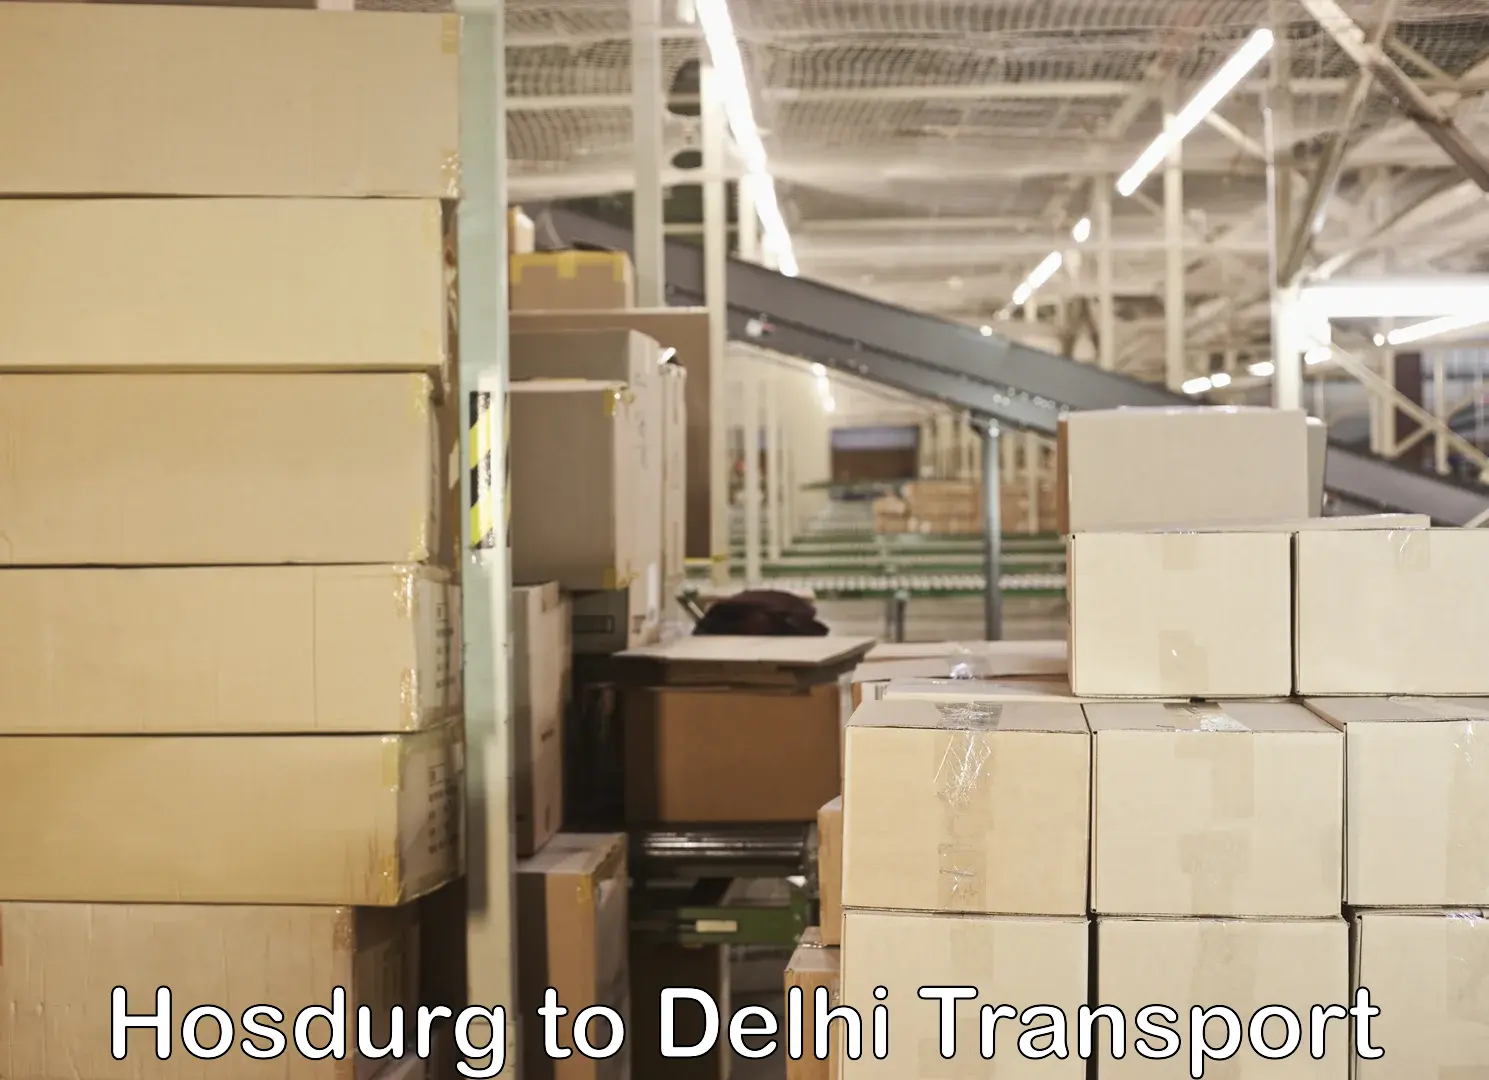 Daily transport service Hosdurg to Delhi